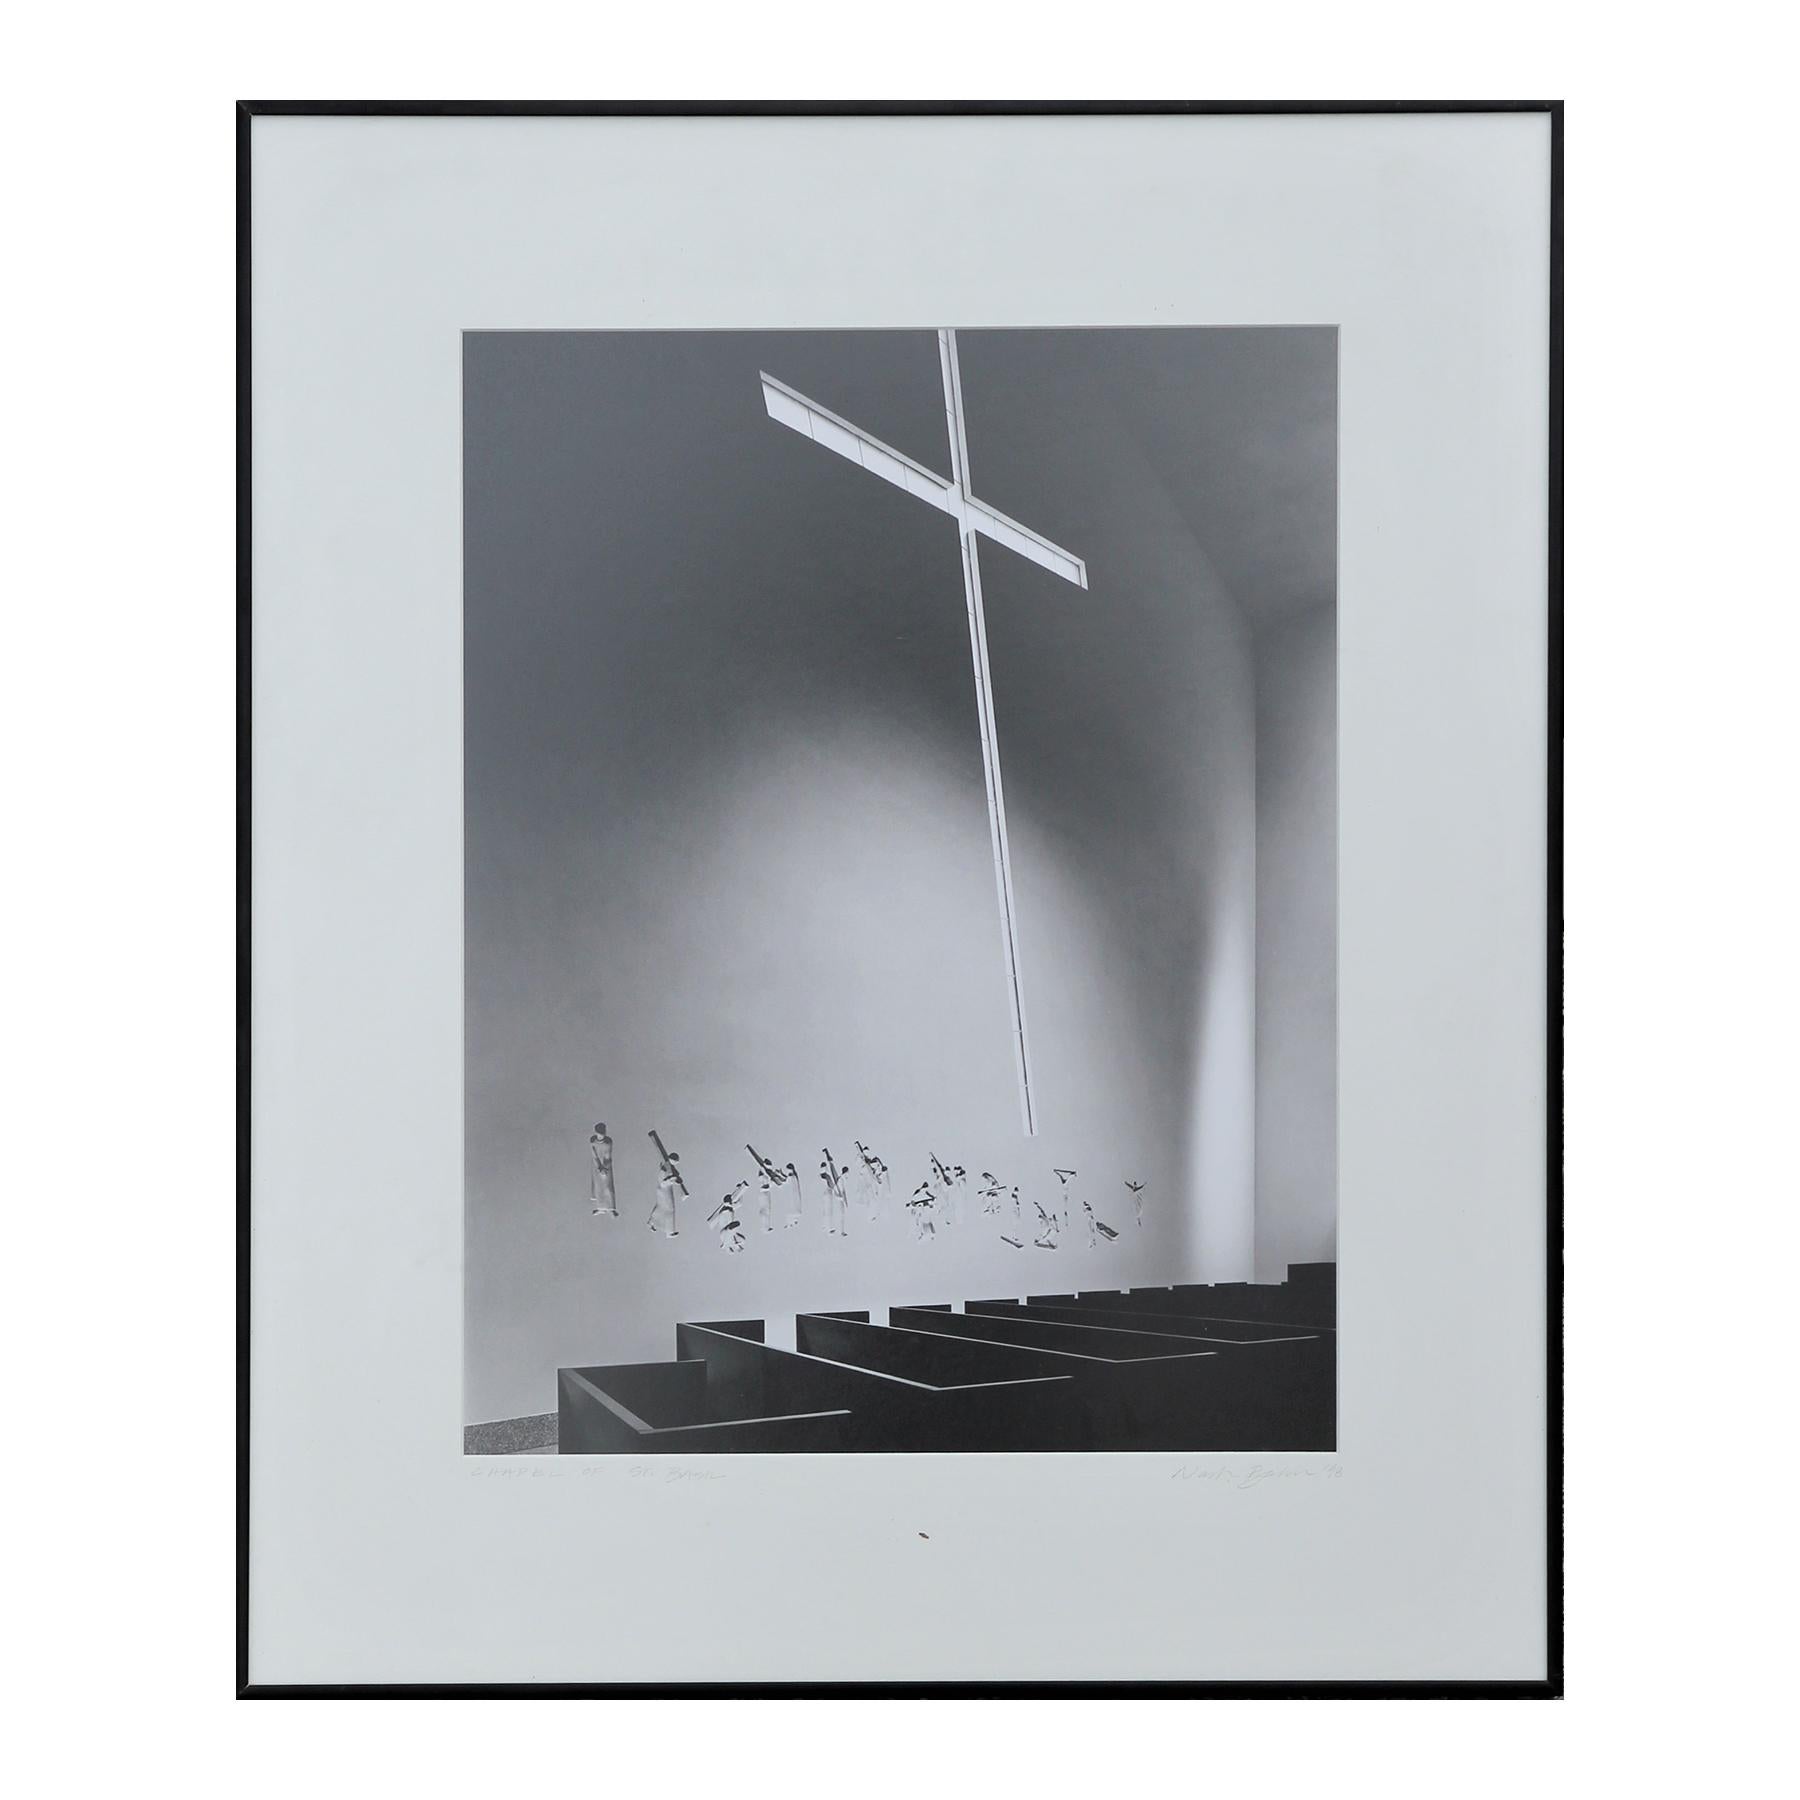 Schwarz-Weiß-Fotografie der Kapelle von St. Basil, Innenraum der Kirche mit Kreuzfenster